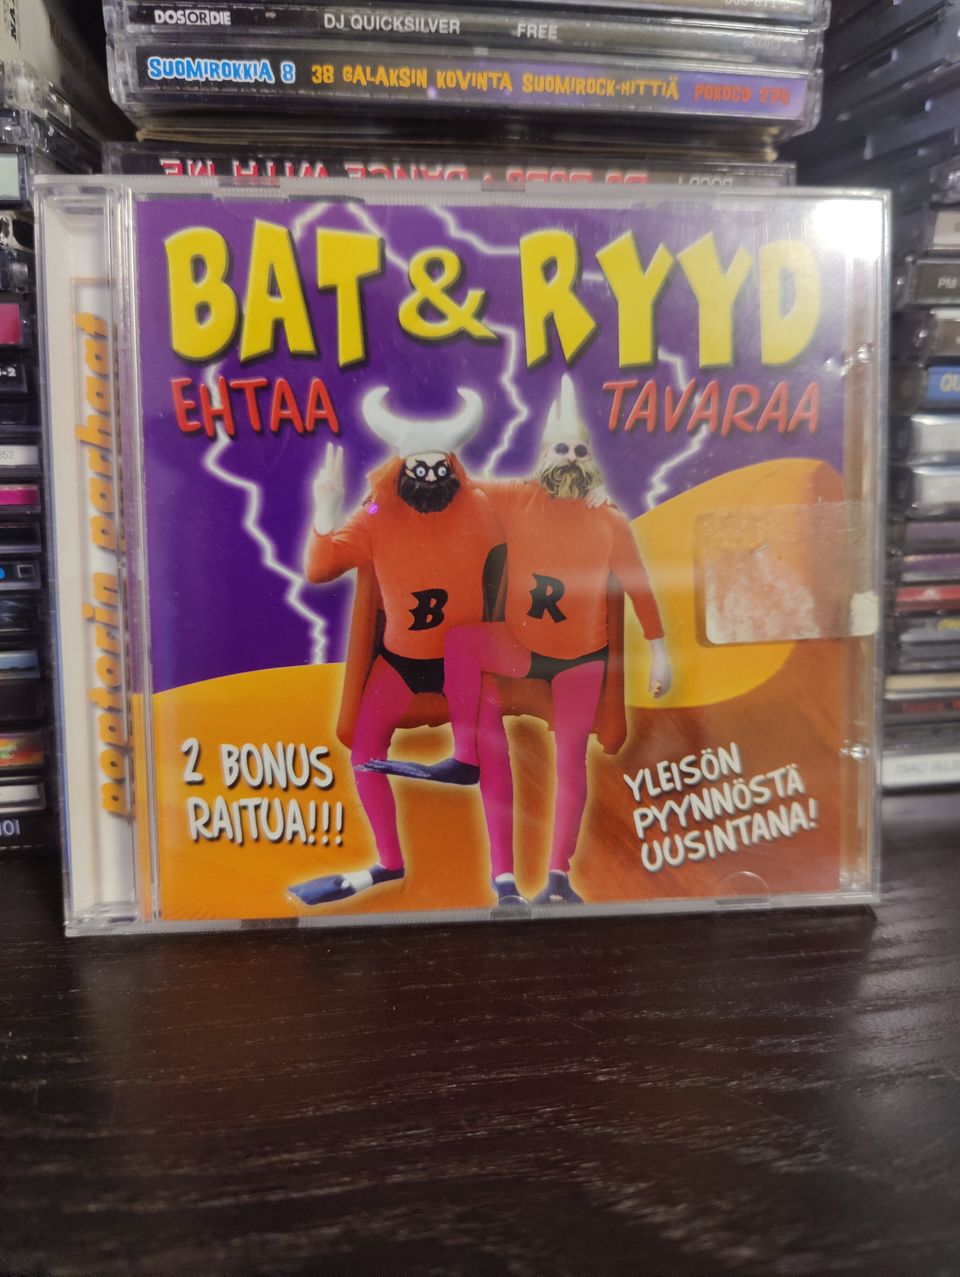 Bat & Ryyd ehtaa tavaraa CD 2 bonus raitua